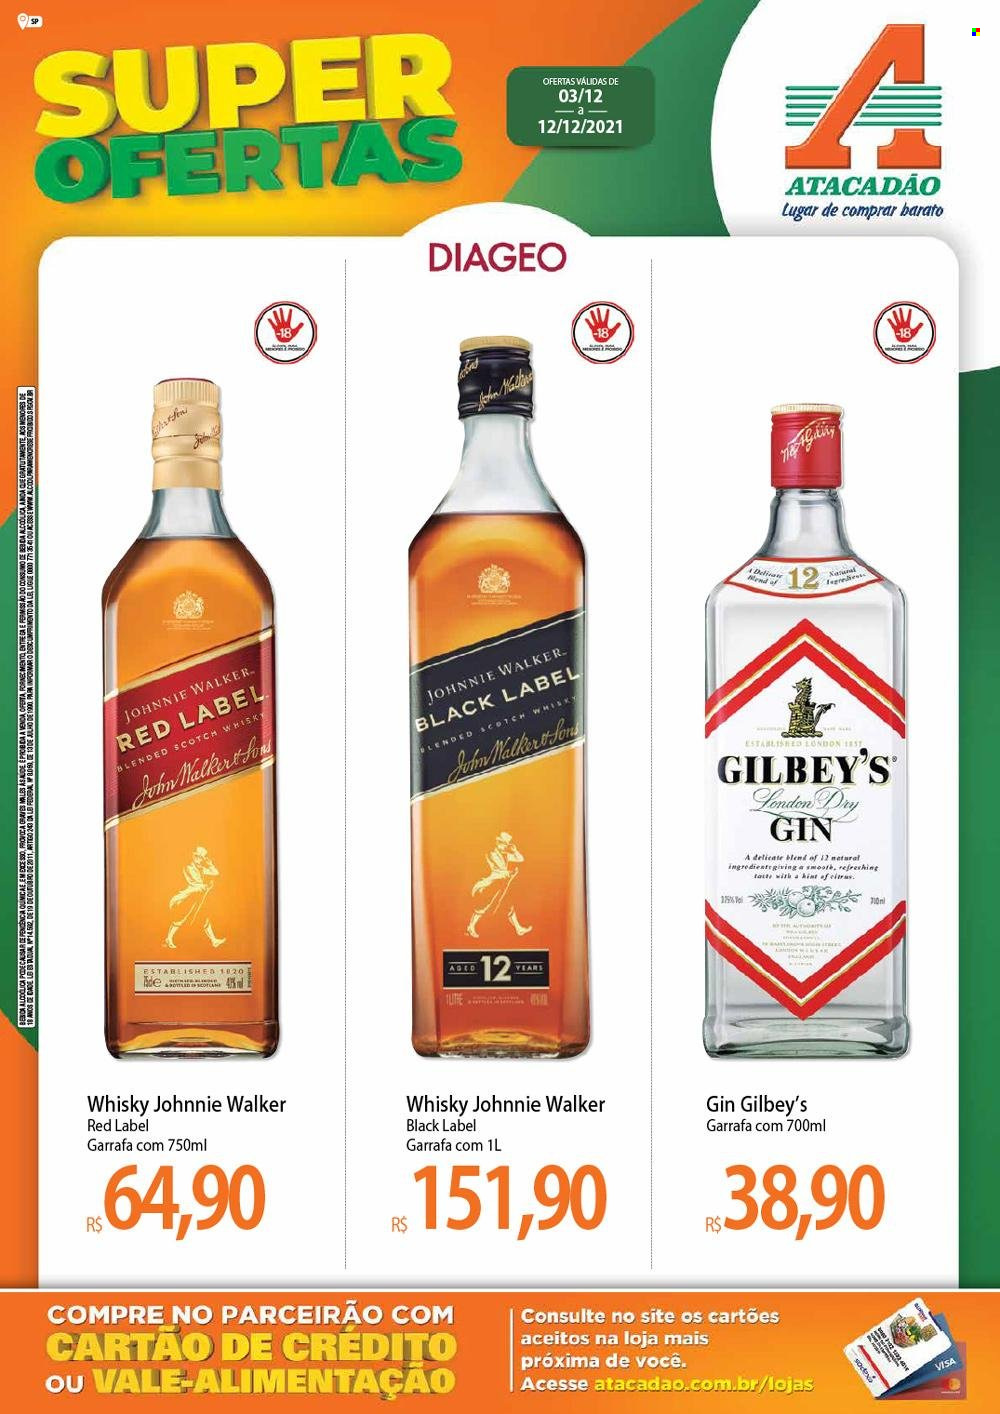 thumbnail - Folheto Atacadão - 03/12/2021 - 12/12/2021 - Produtos em promoção - gin, whiskey, Johnnie Walker, garrafa. Página 1.